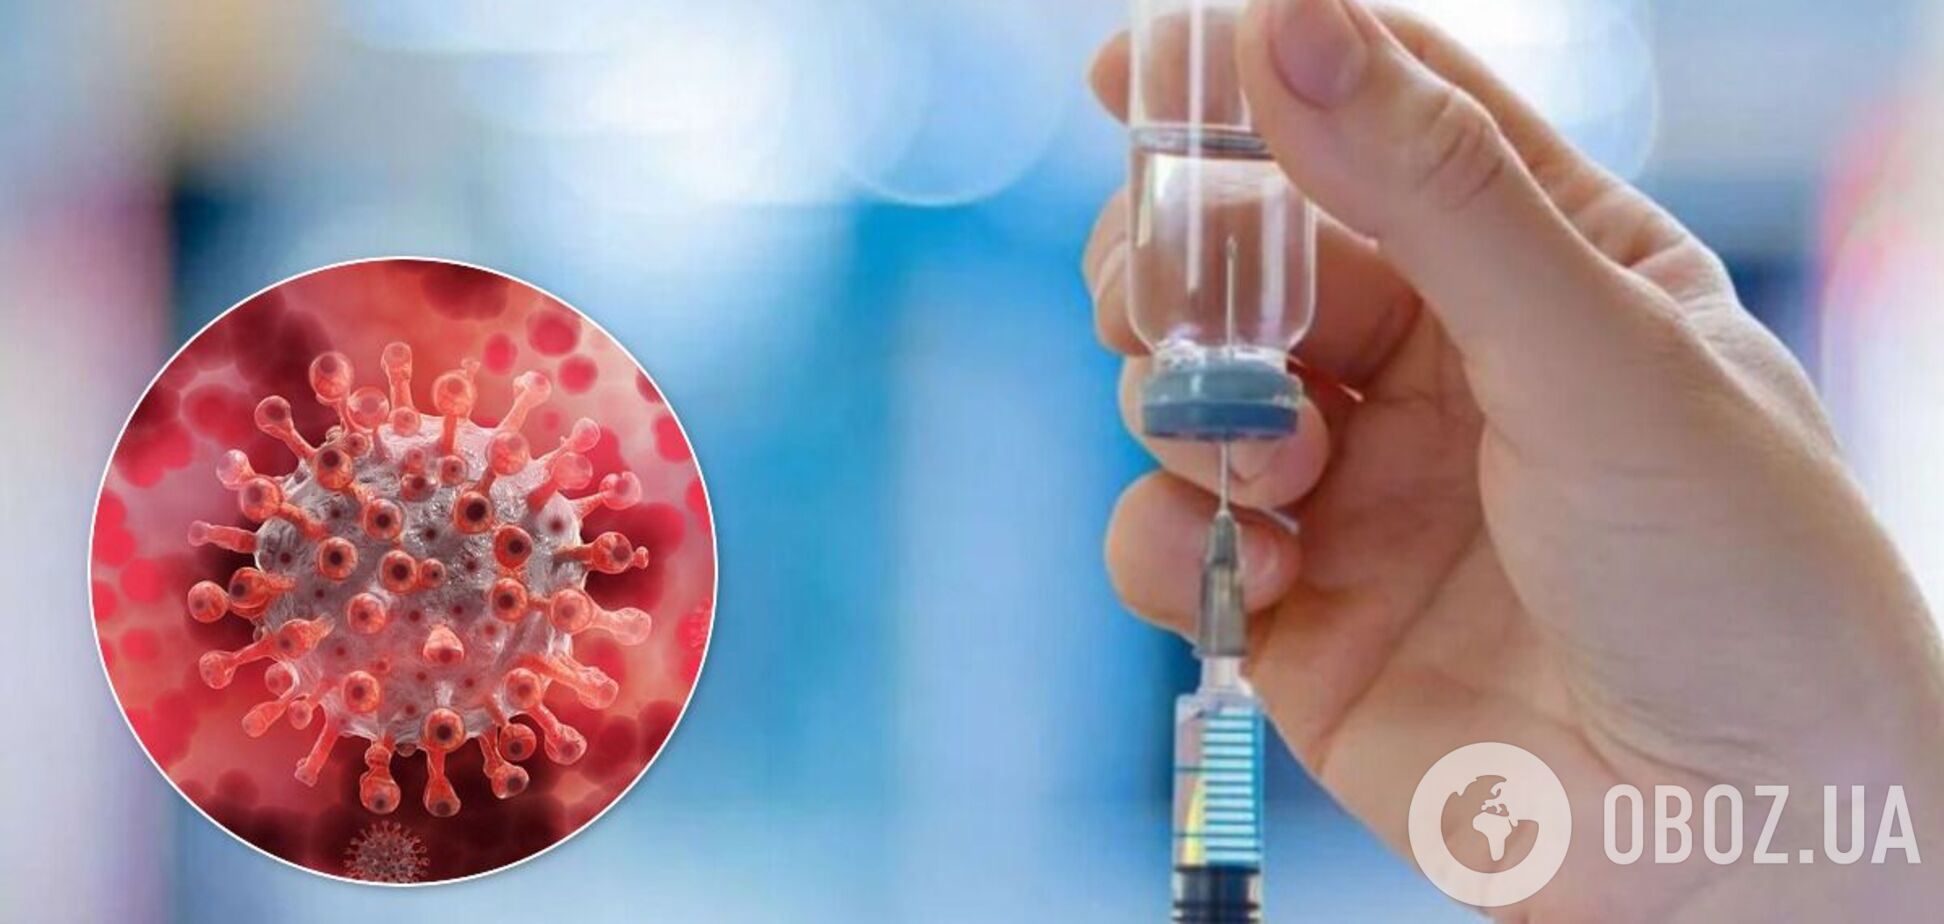 Противогриппозная вакцина может защитить от коронавируса